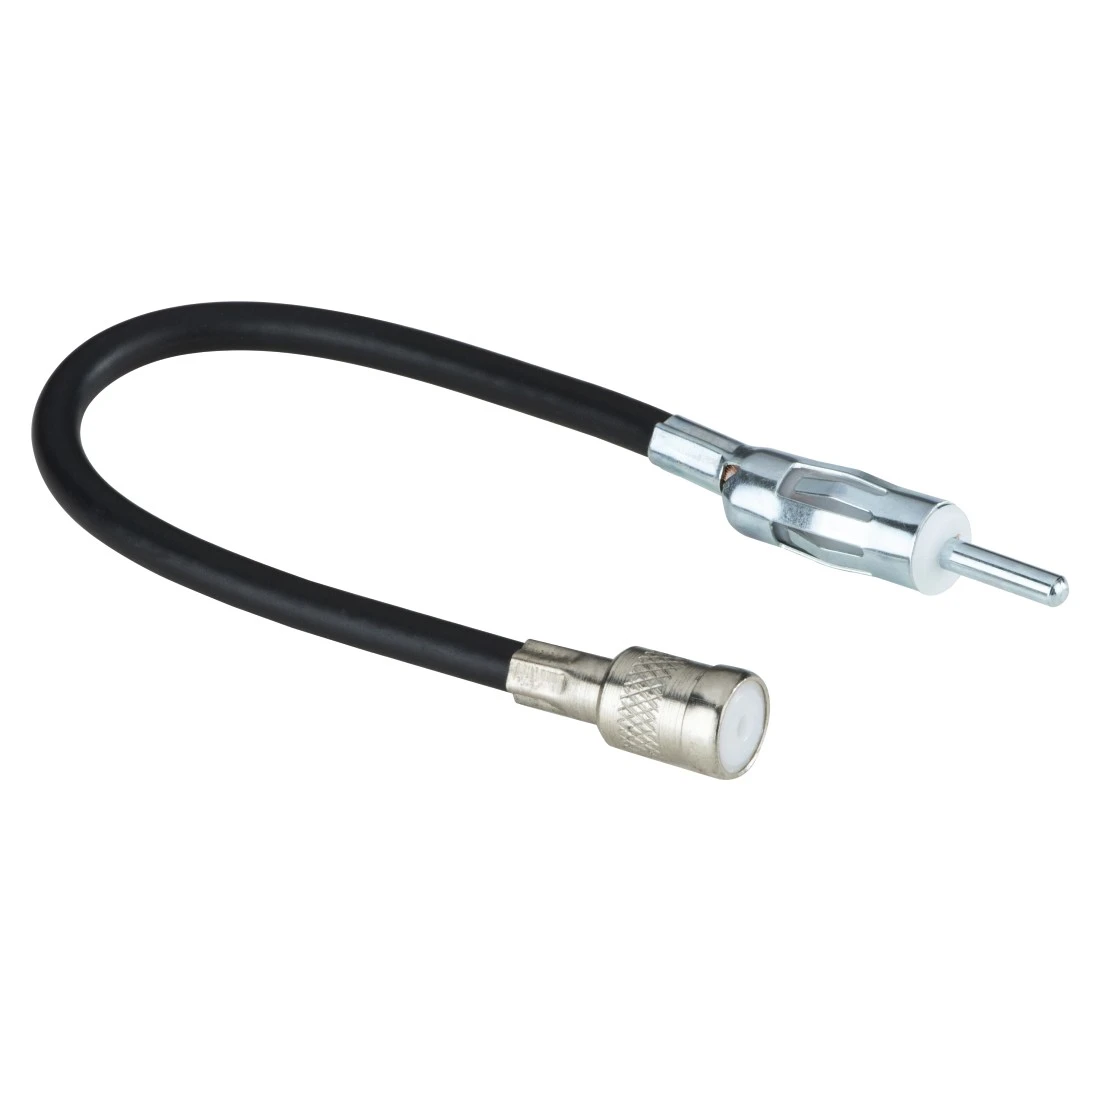 Antennen-Adapter Stecker ISO, 90° - Kupplung DIN